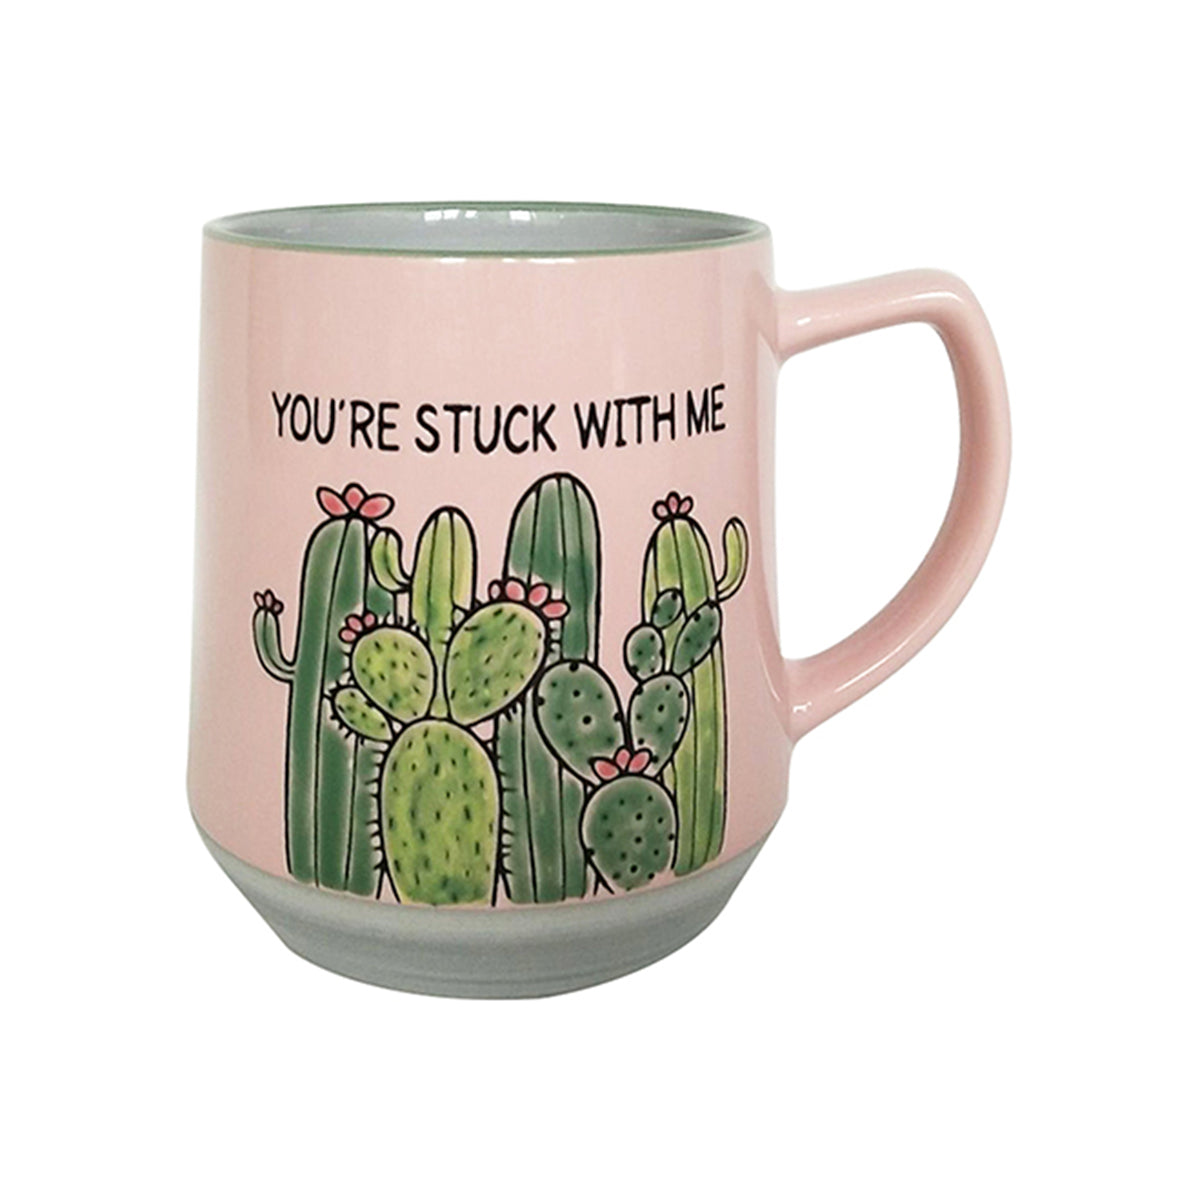 'You're stuck with me' Mug